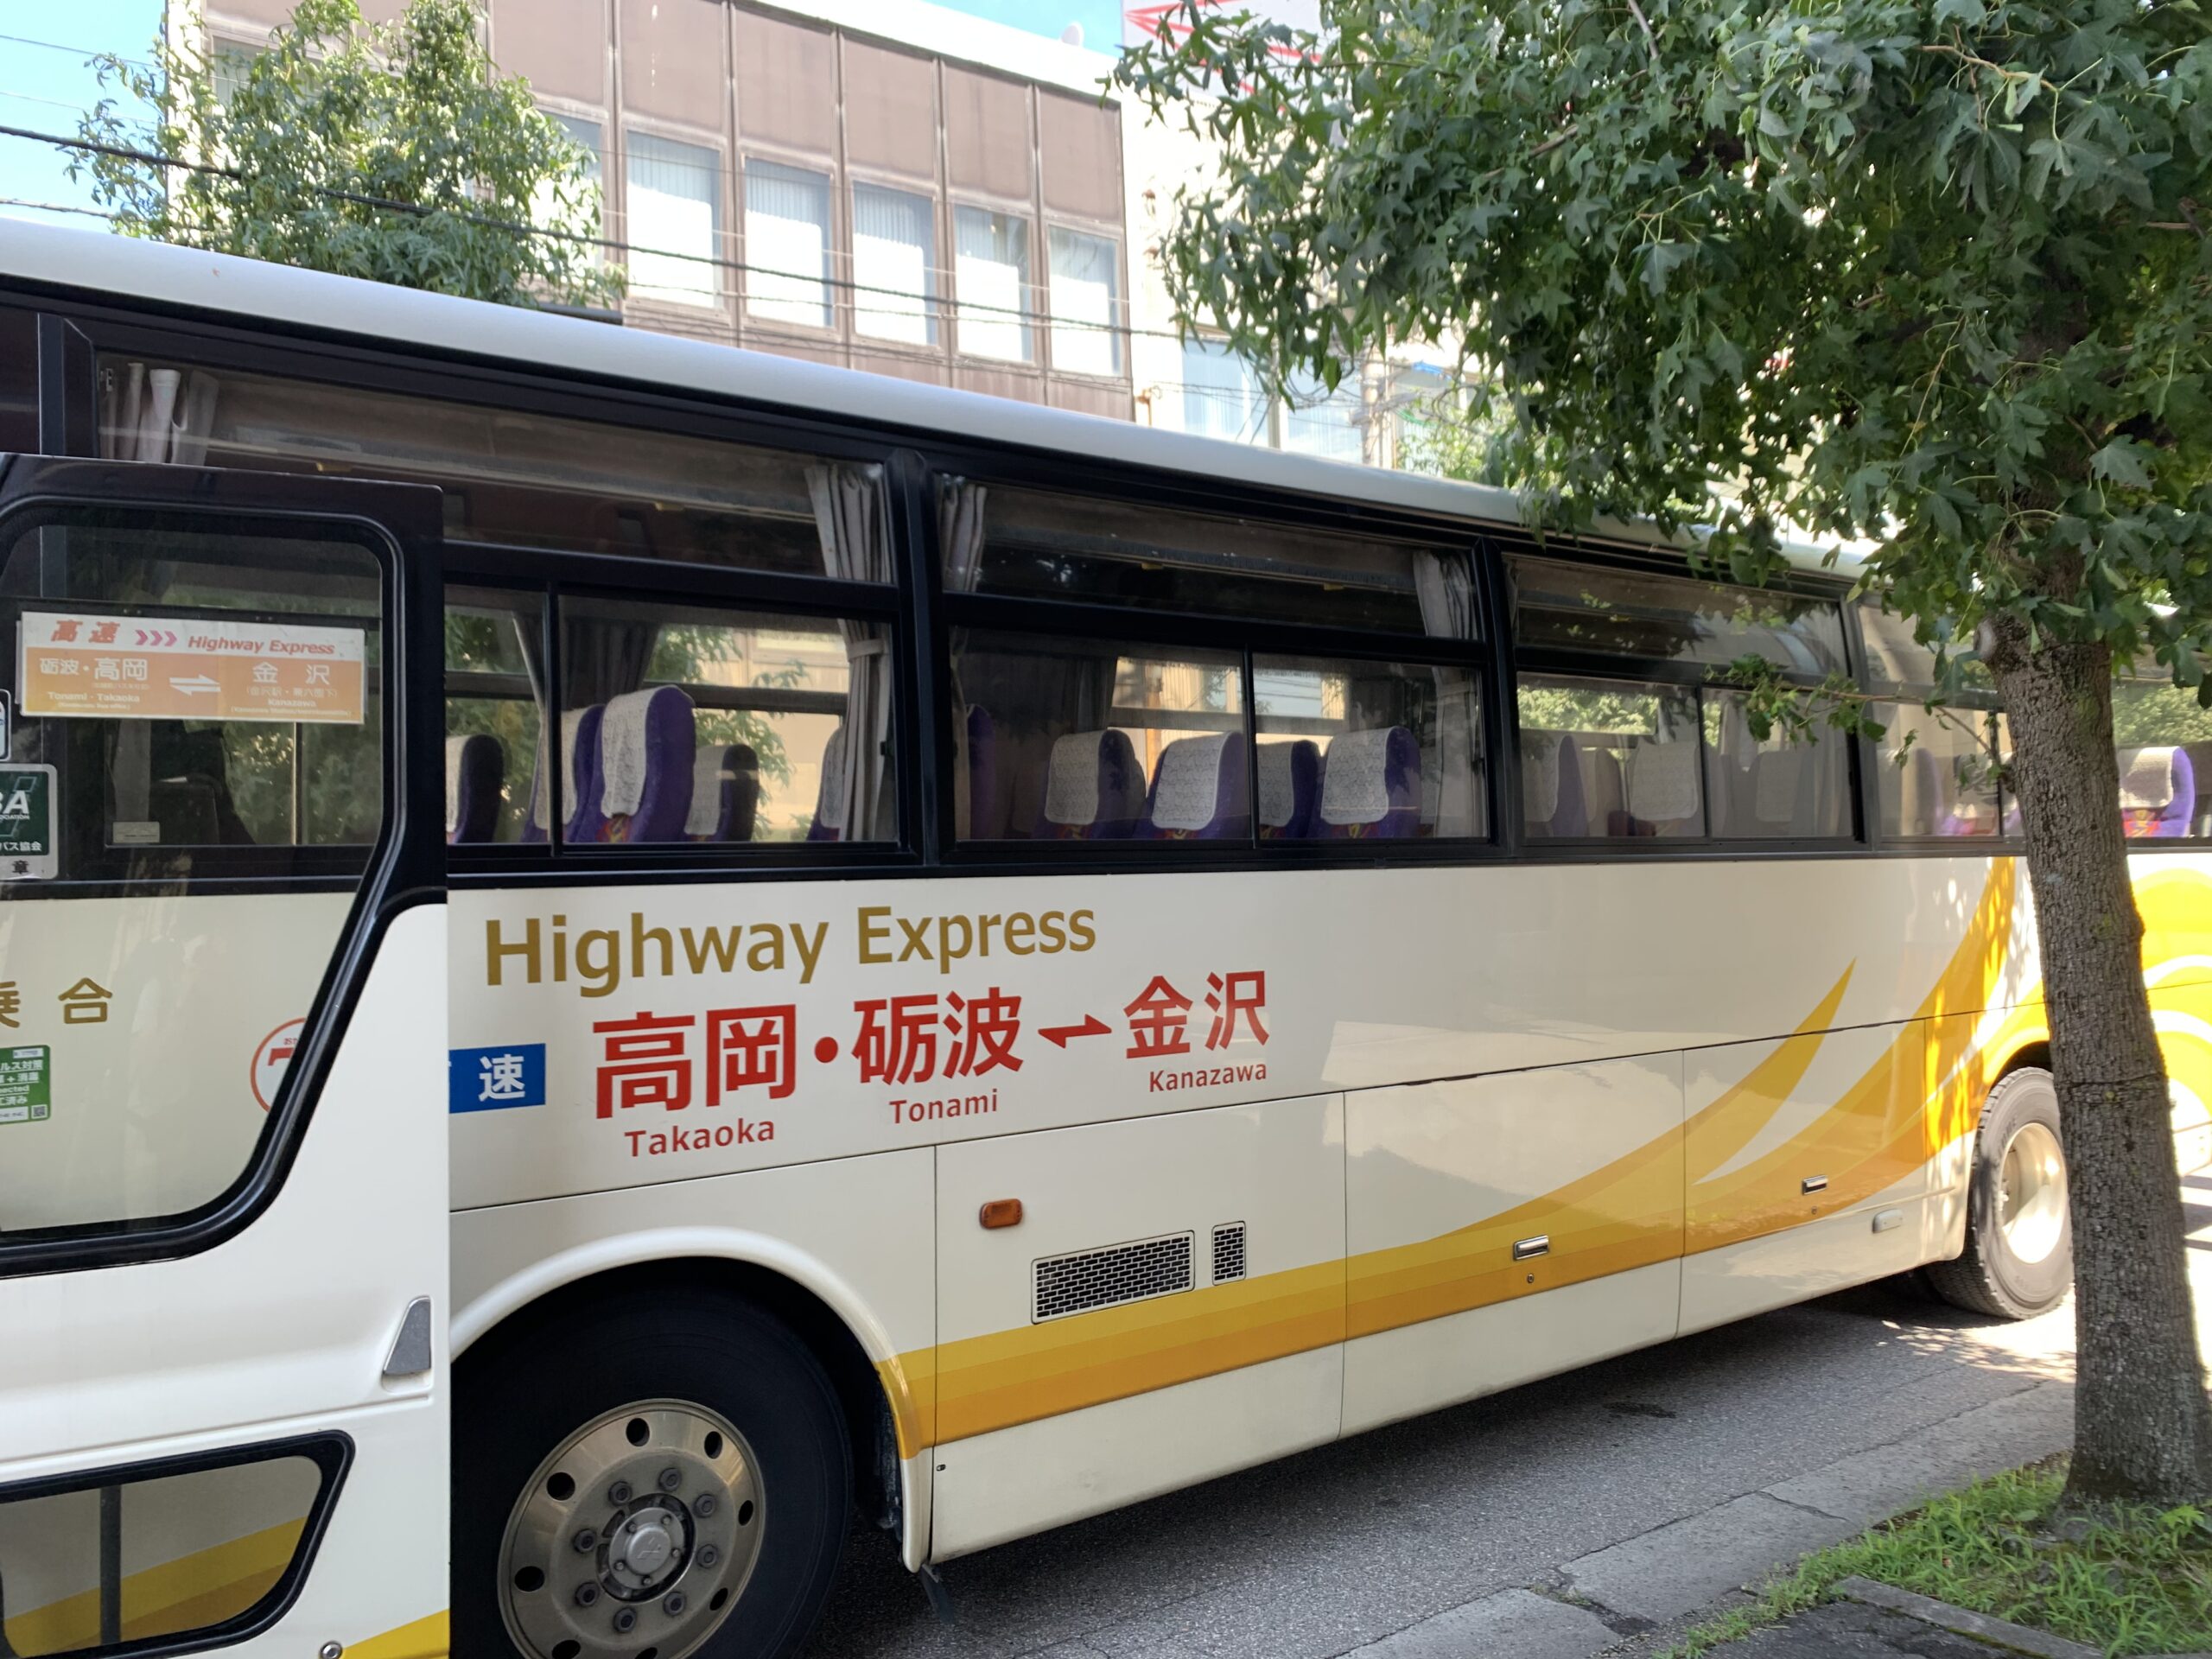 石川県から富山県へと横断する方法は電車だけじゃない。富山県へとバスで行く横断方法について